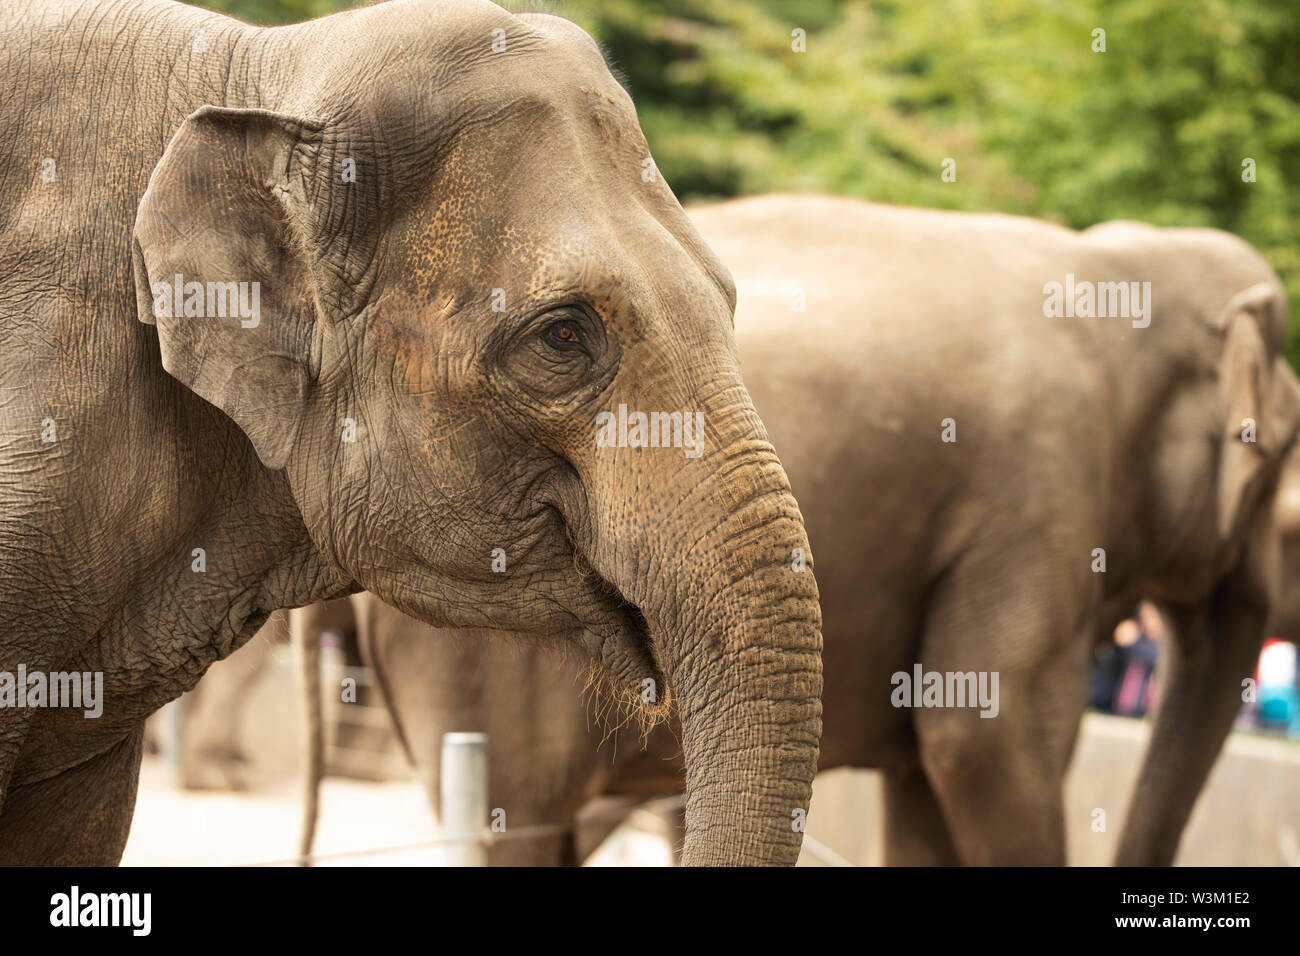 Asian elephants (Elephas maximus) at the zoo (Tierpark Hagenbeck) in Hamburg, Germany. Stock Photo